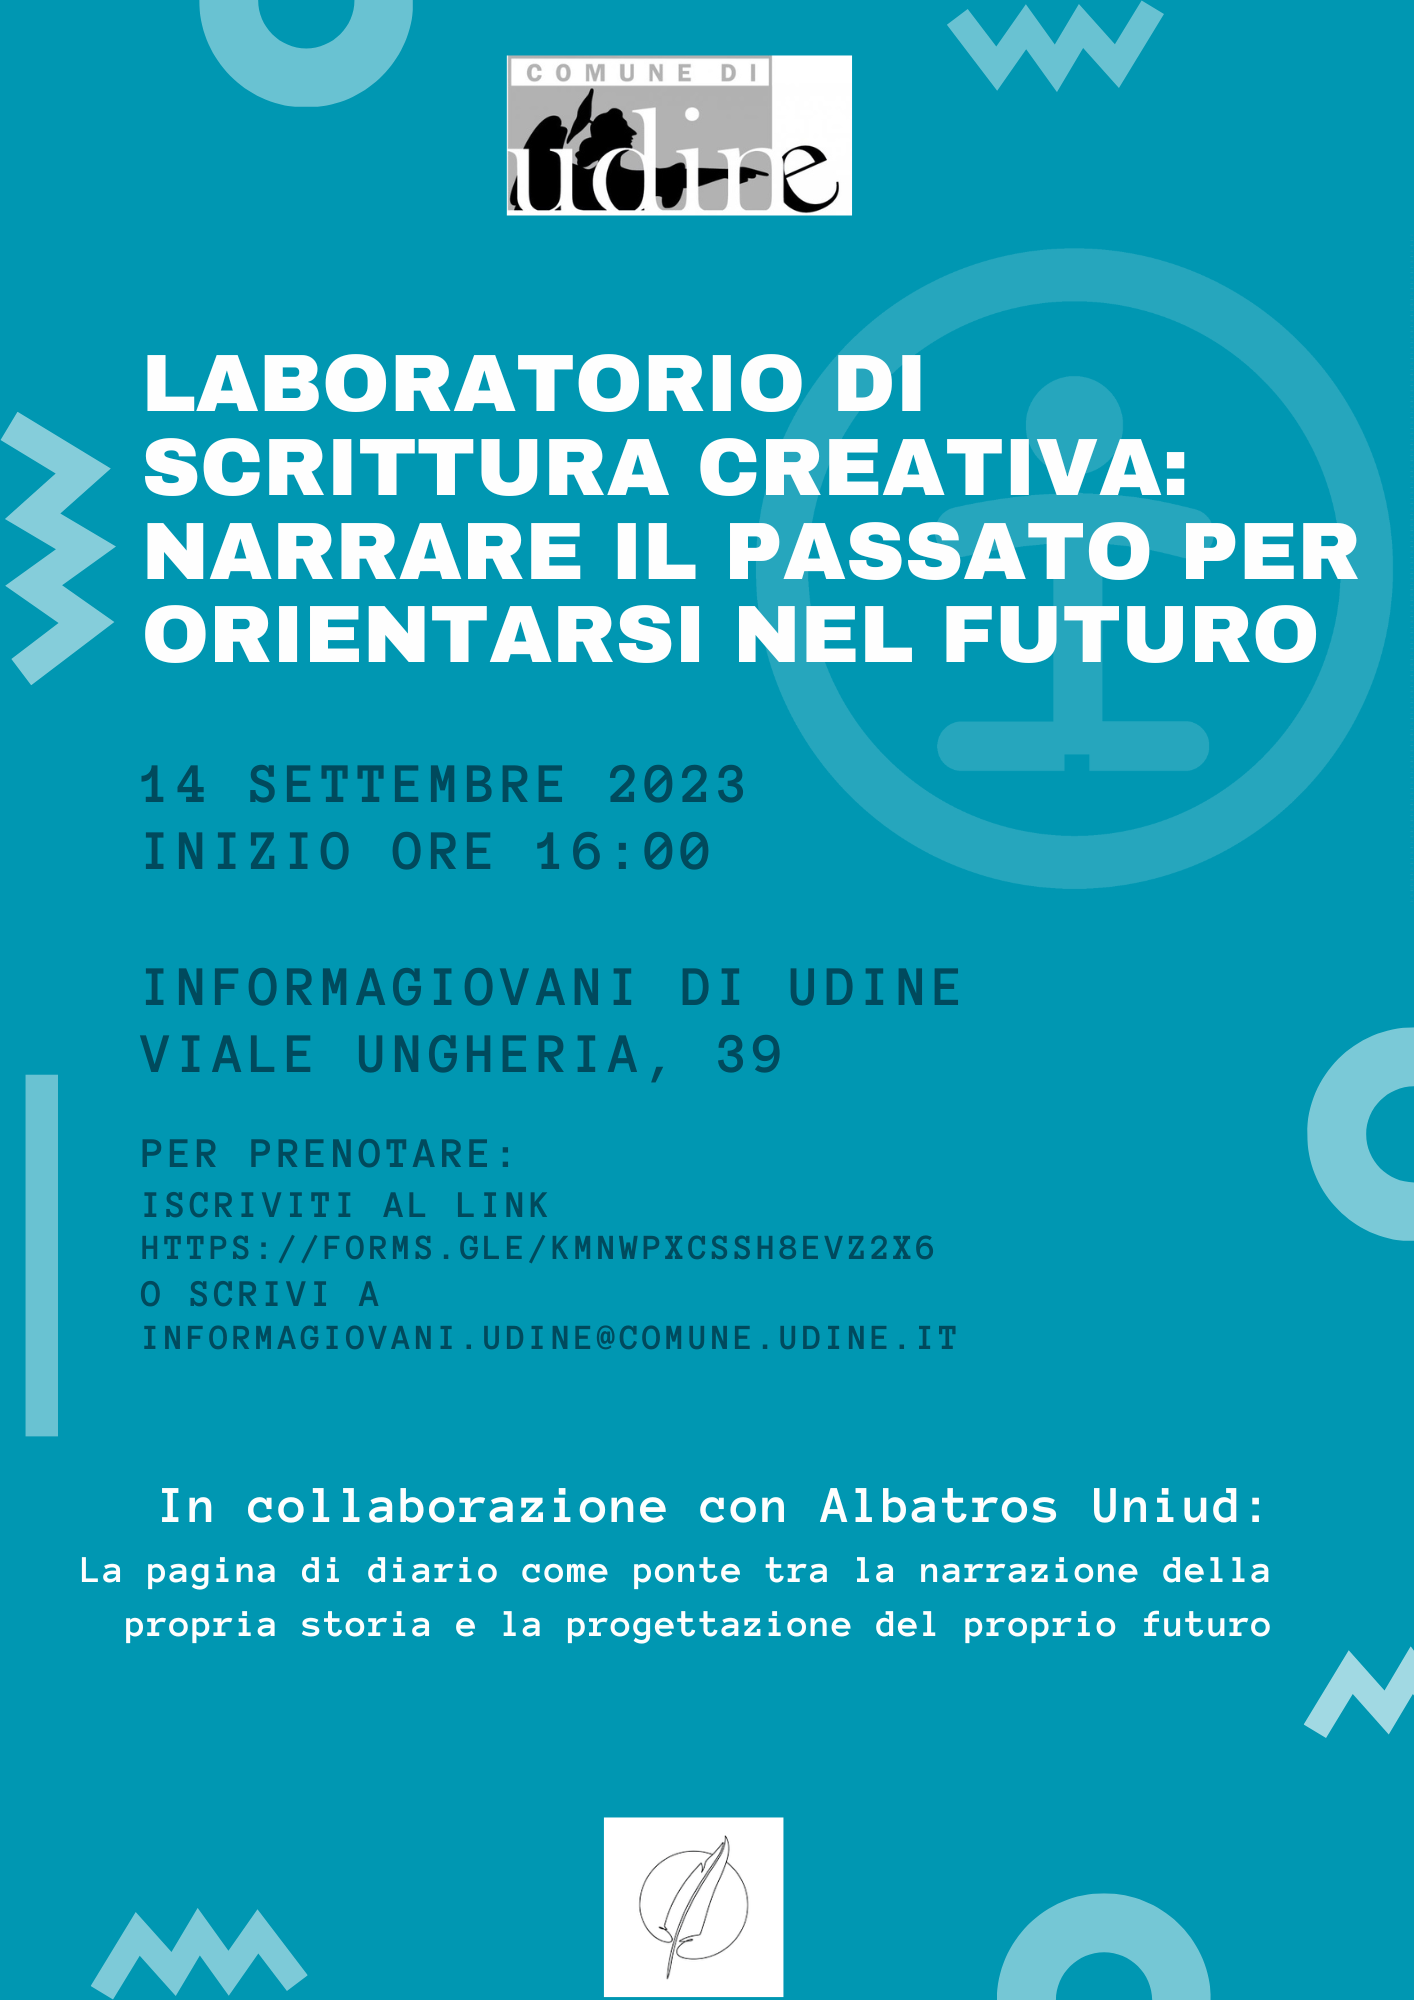 Laboratorio di Scrittura Creativa: Narrare il Passato per Orientarsi nel Futuro presso Informagiovani di Udine